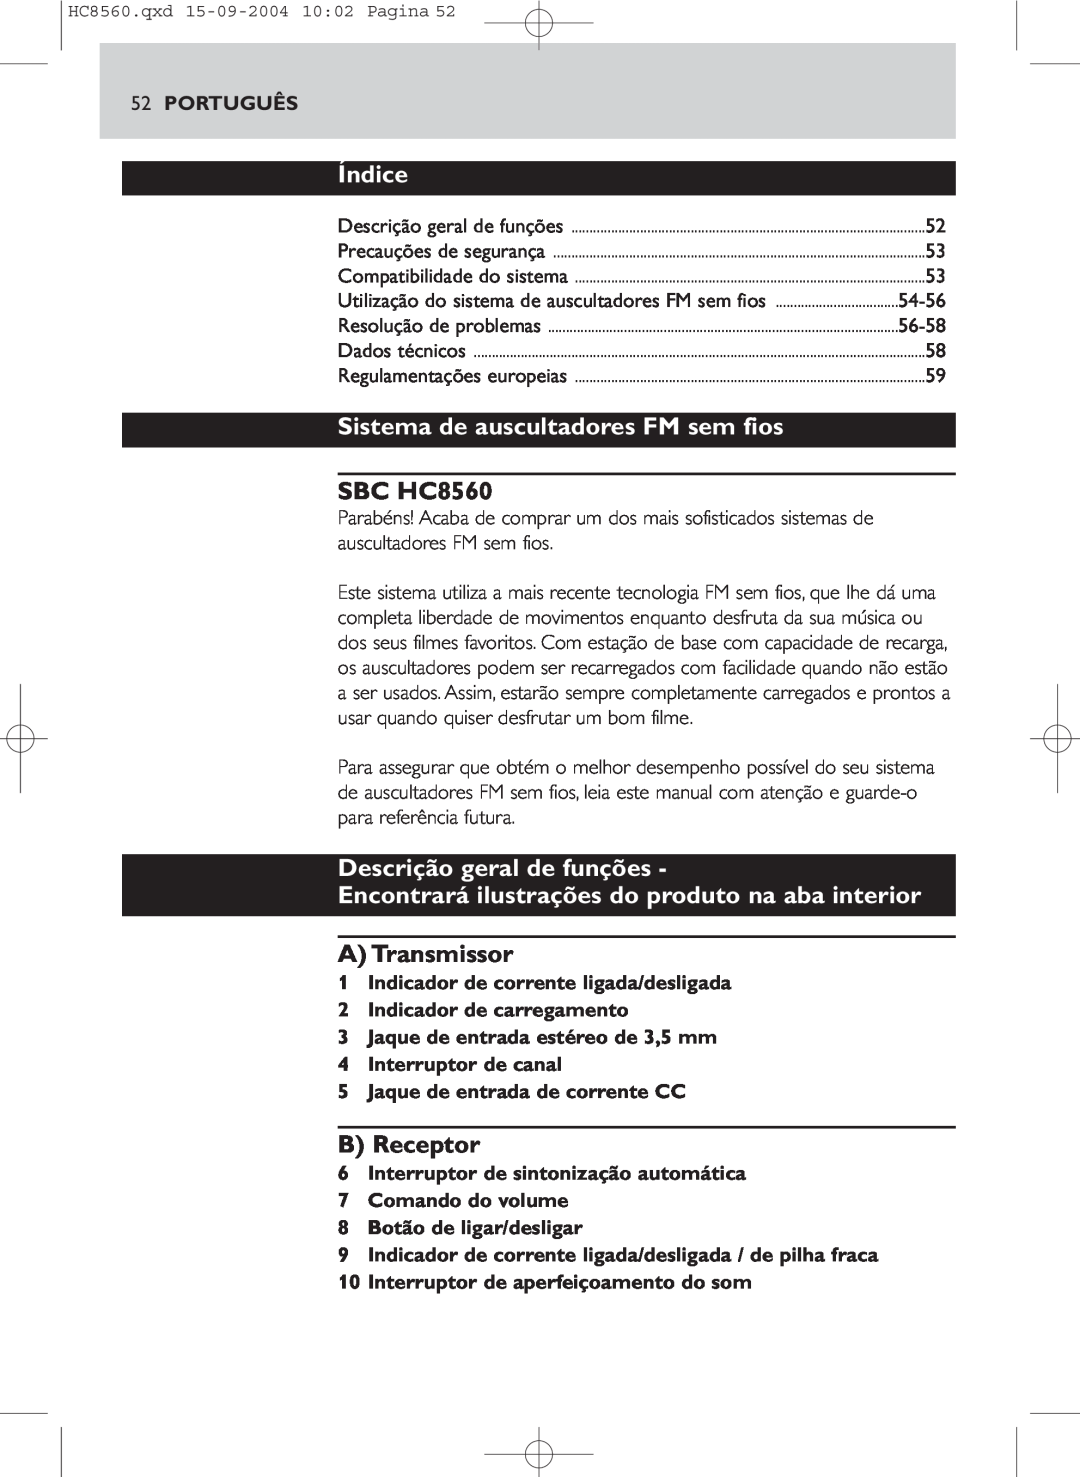 Philips HC 8560 manual Sistema de auscultadores FM sem fios, Descrição geral de funções, A Transmissor, Índice, SBC HC8560 